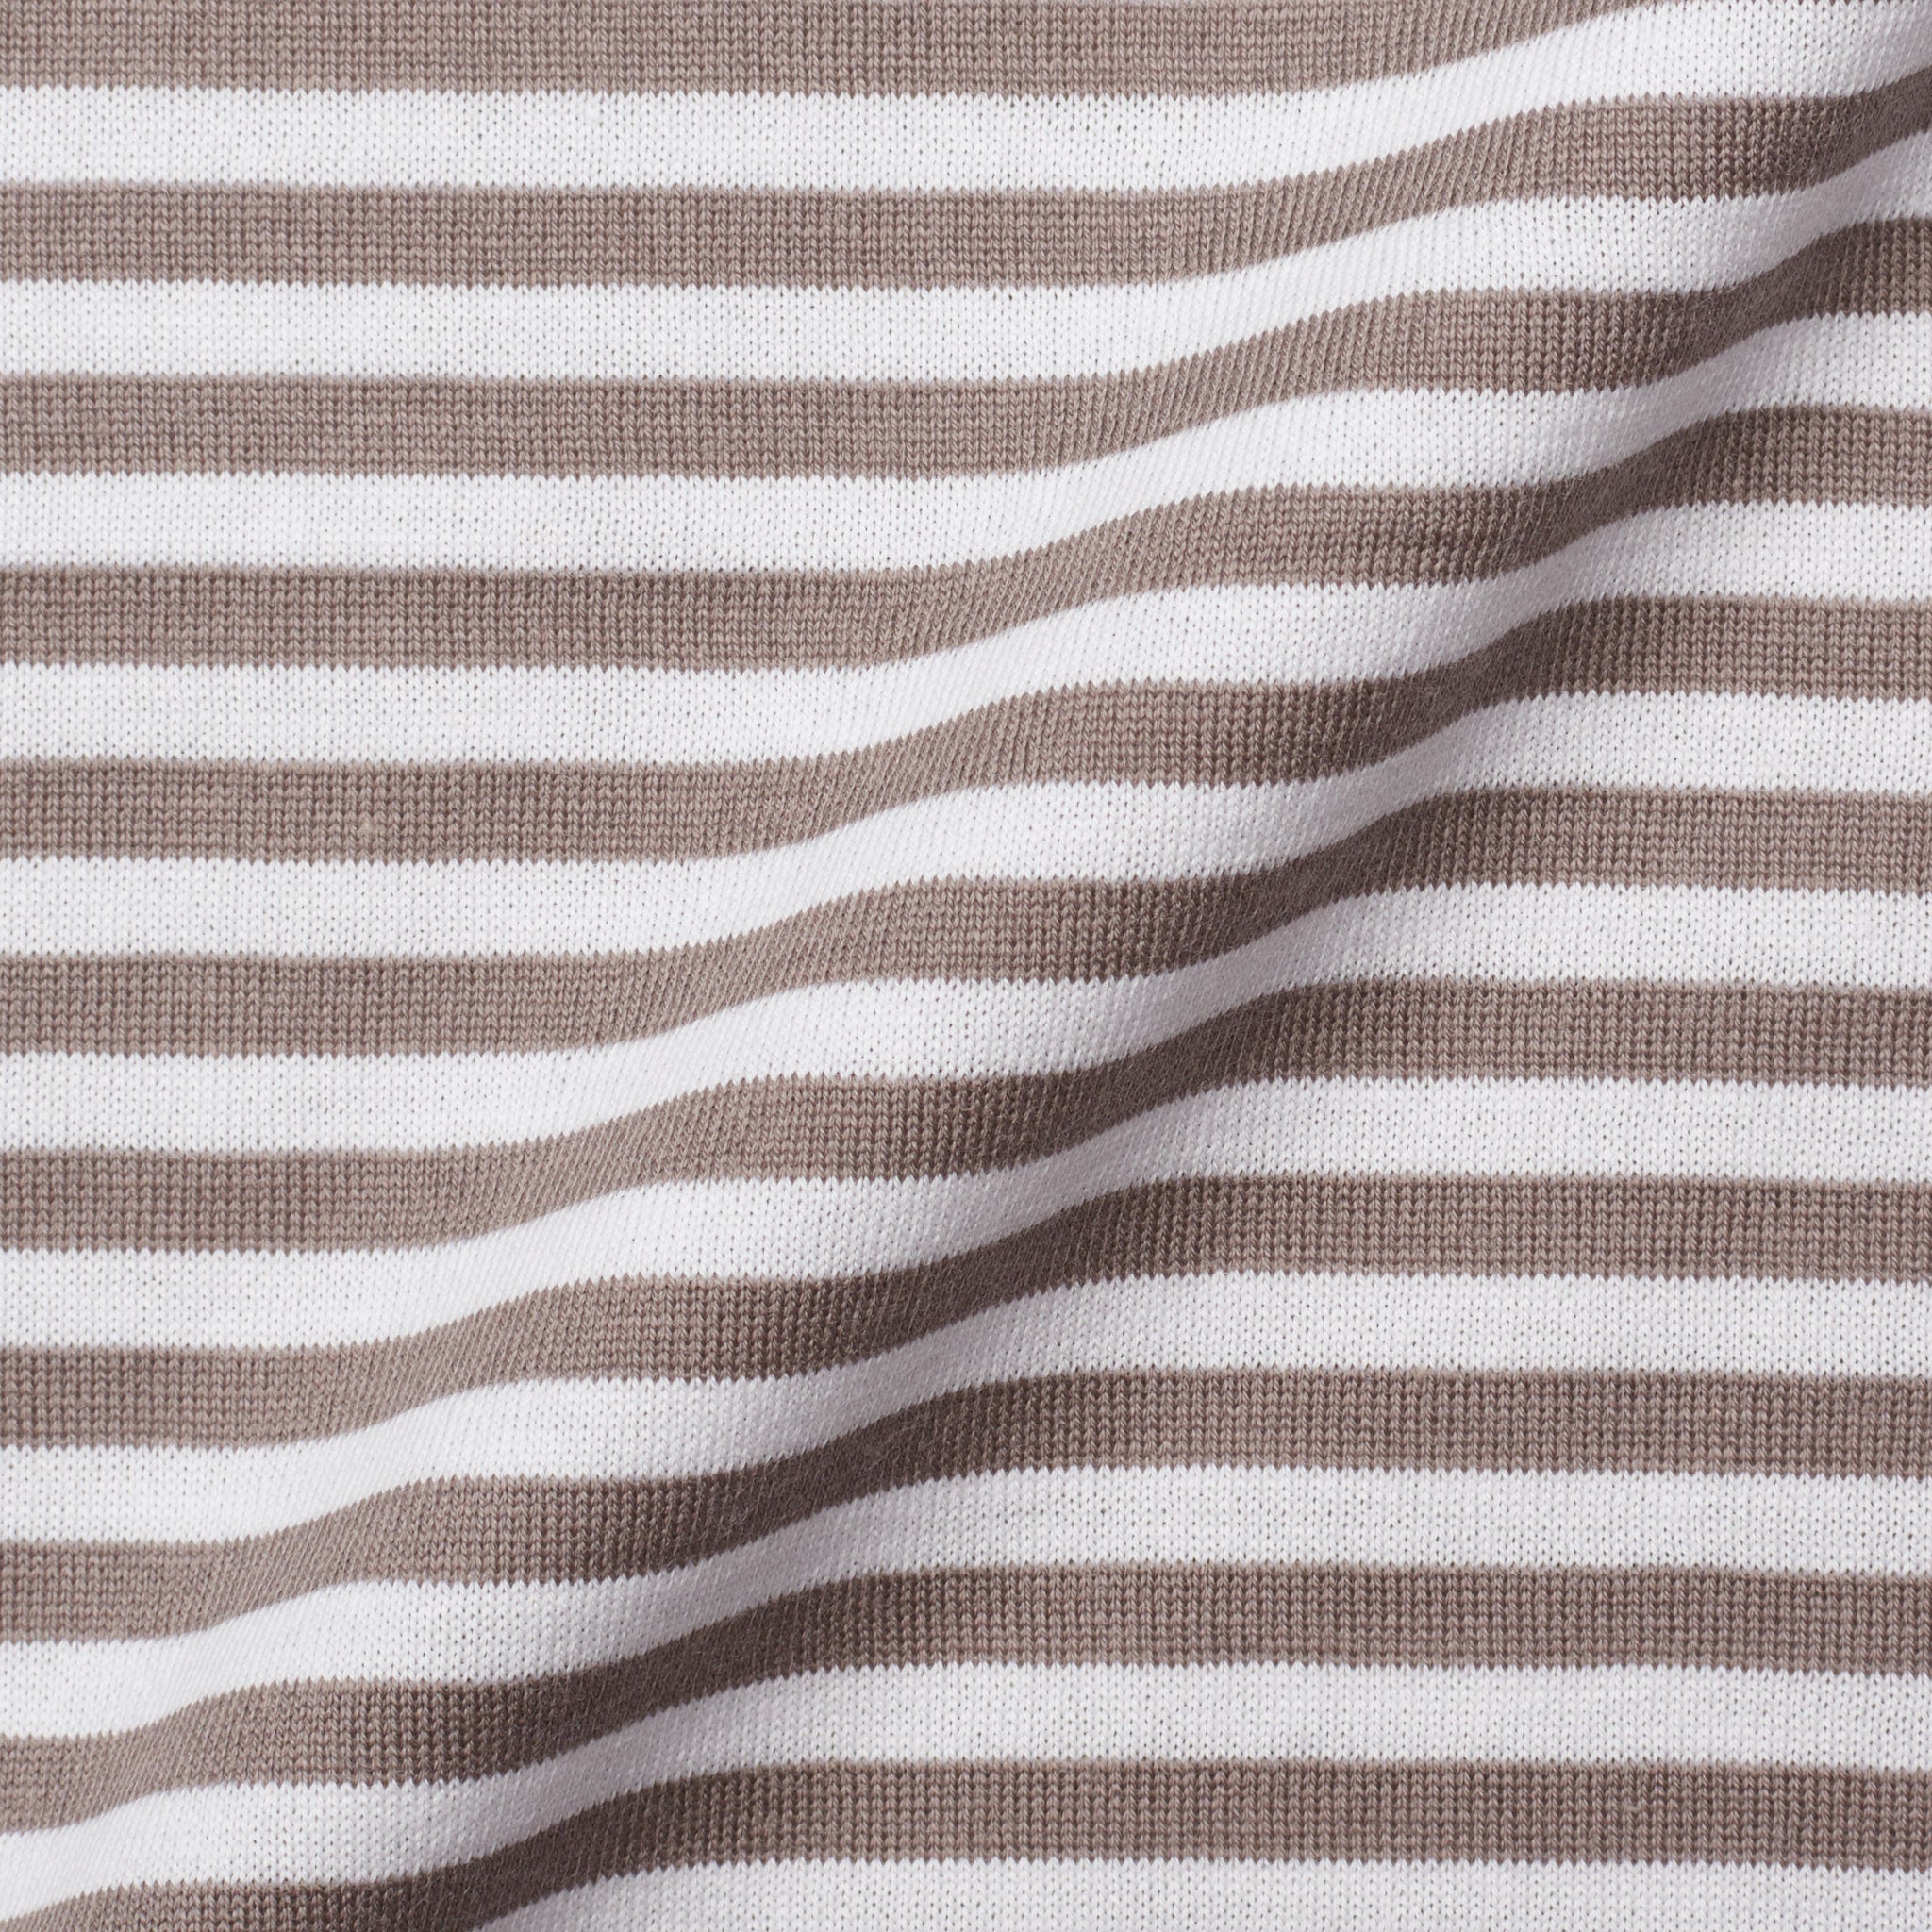 FEDELI "Libeccio" Gray-White Striped Cotton Jersey Polo Shirt NEW FEDELI